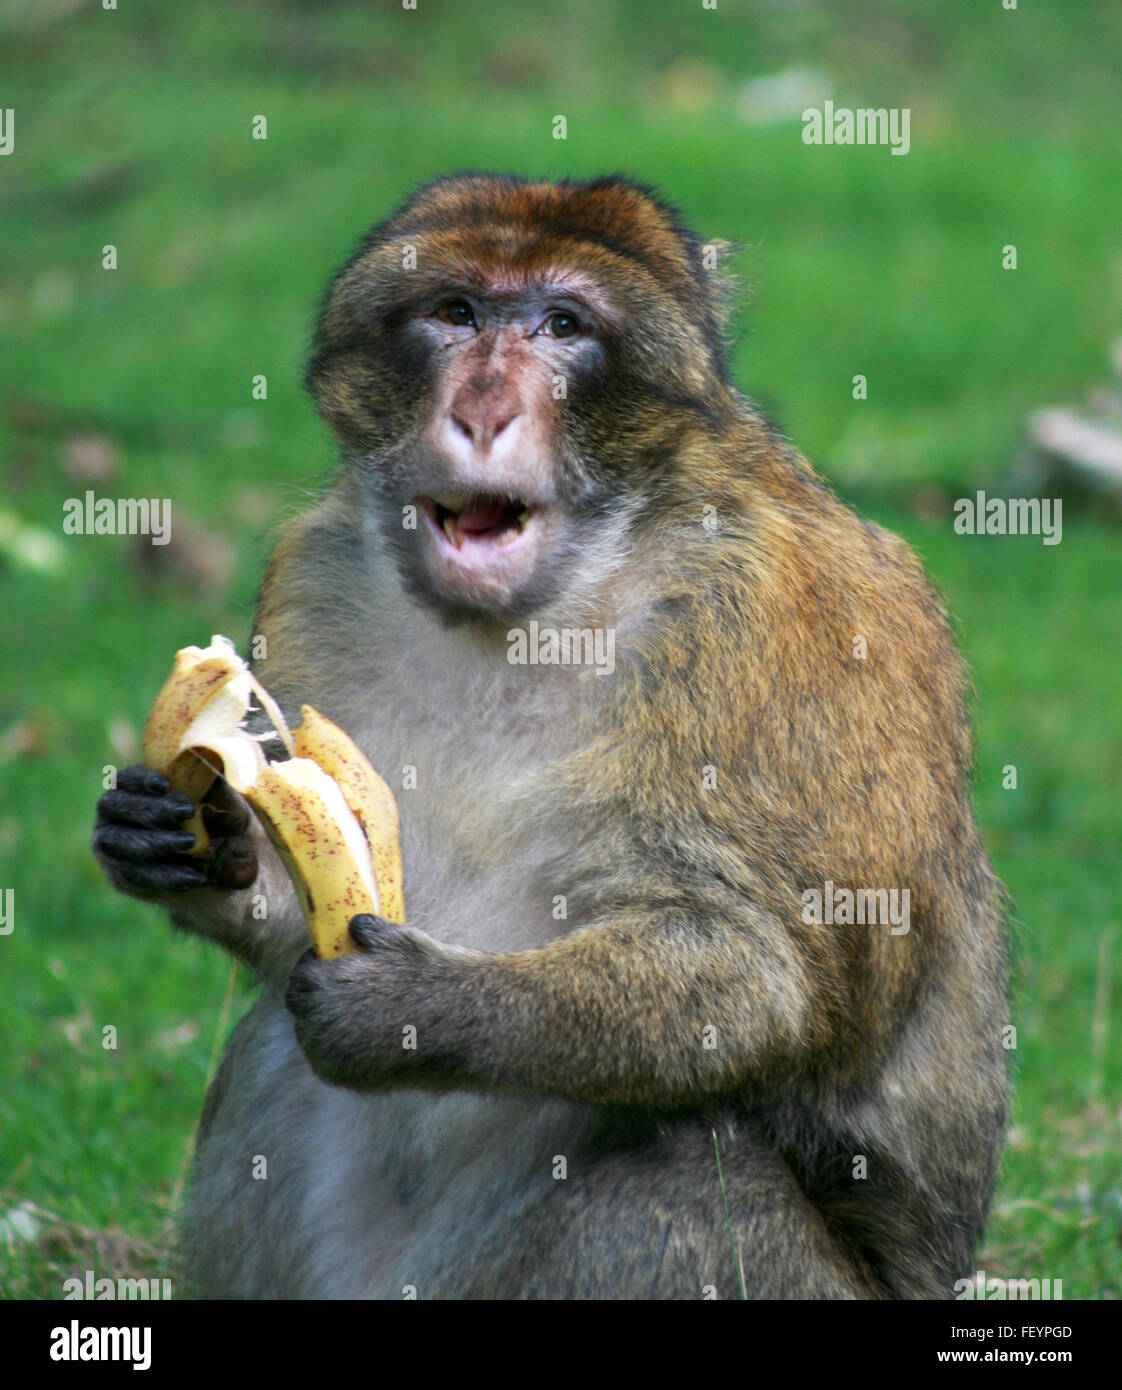 funny monkey, wildlife, monkey in natural habitat, free monkey, animal,  cute, adorable, monkey eating, wildlife photography Stock Photo - Alamy